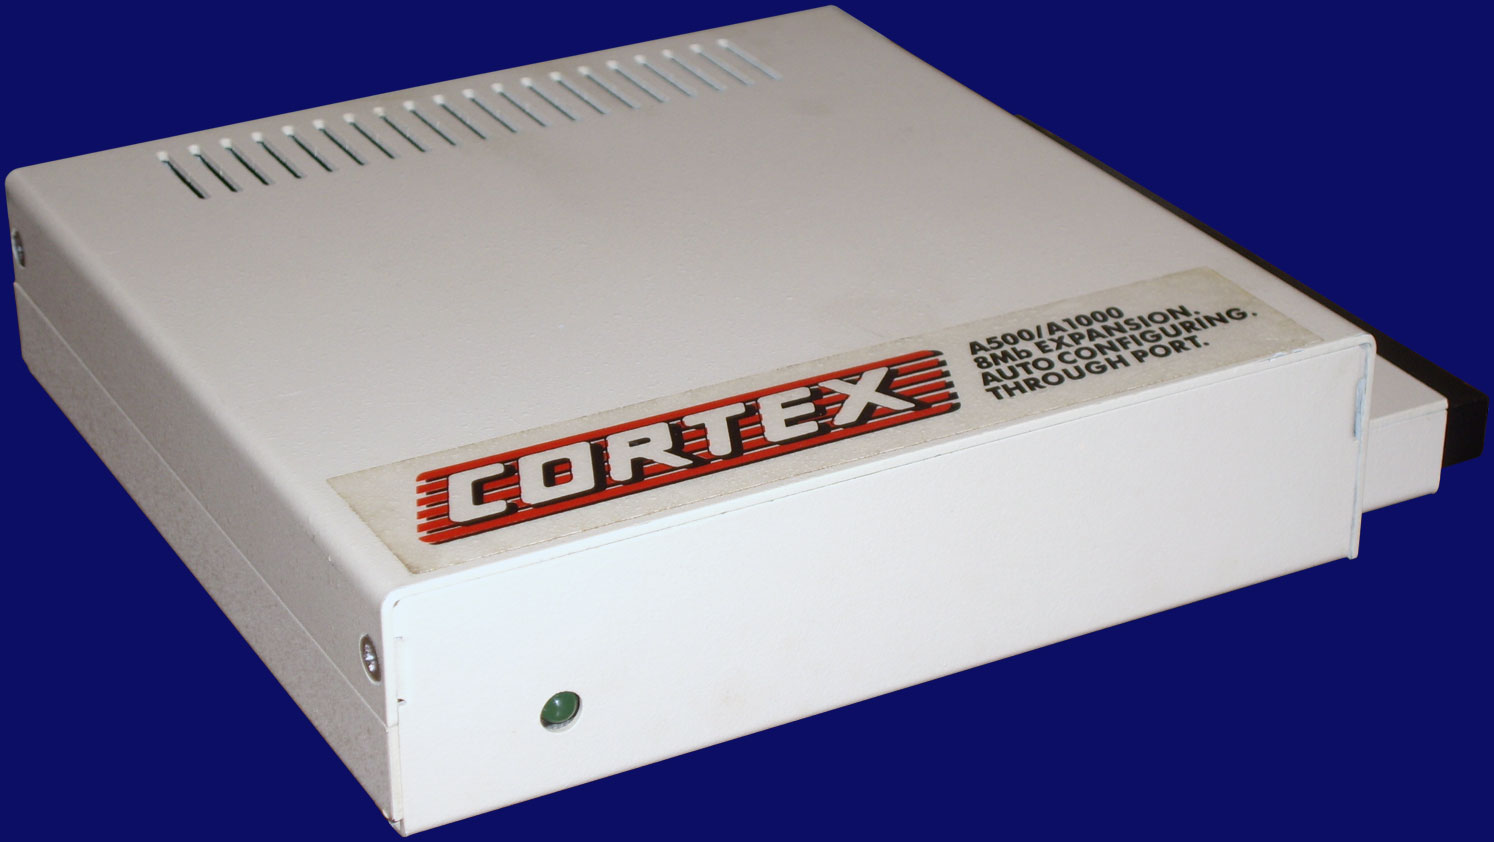 Cortex Design Technologies A500/A1000 RAM - Gehäuse, Vorderseite